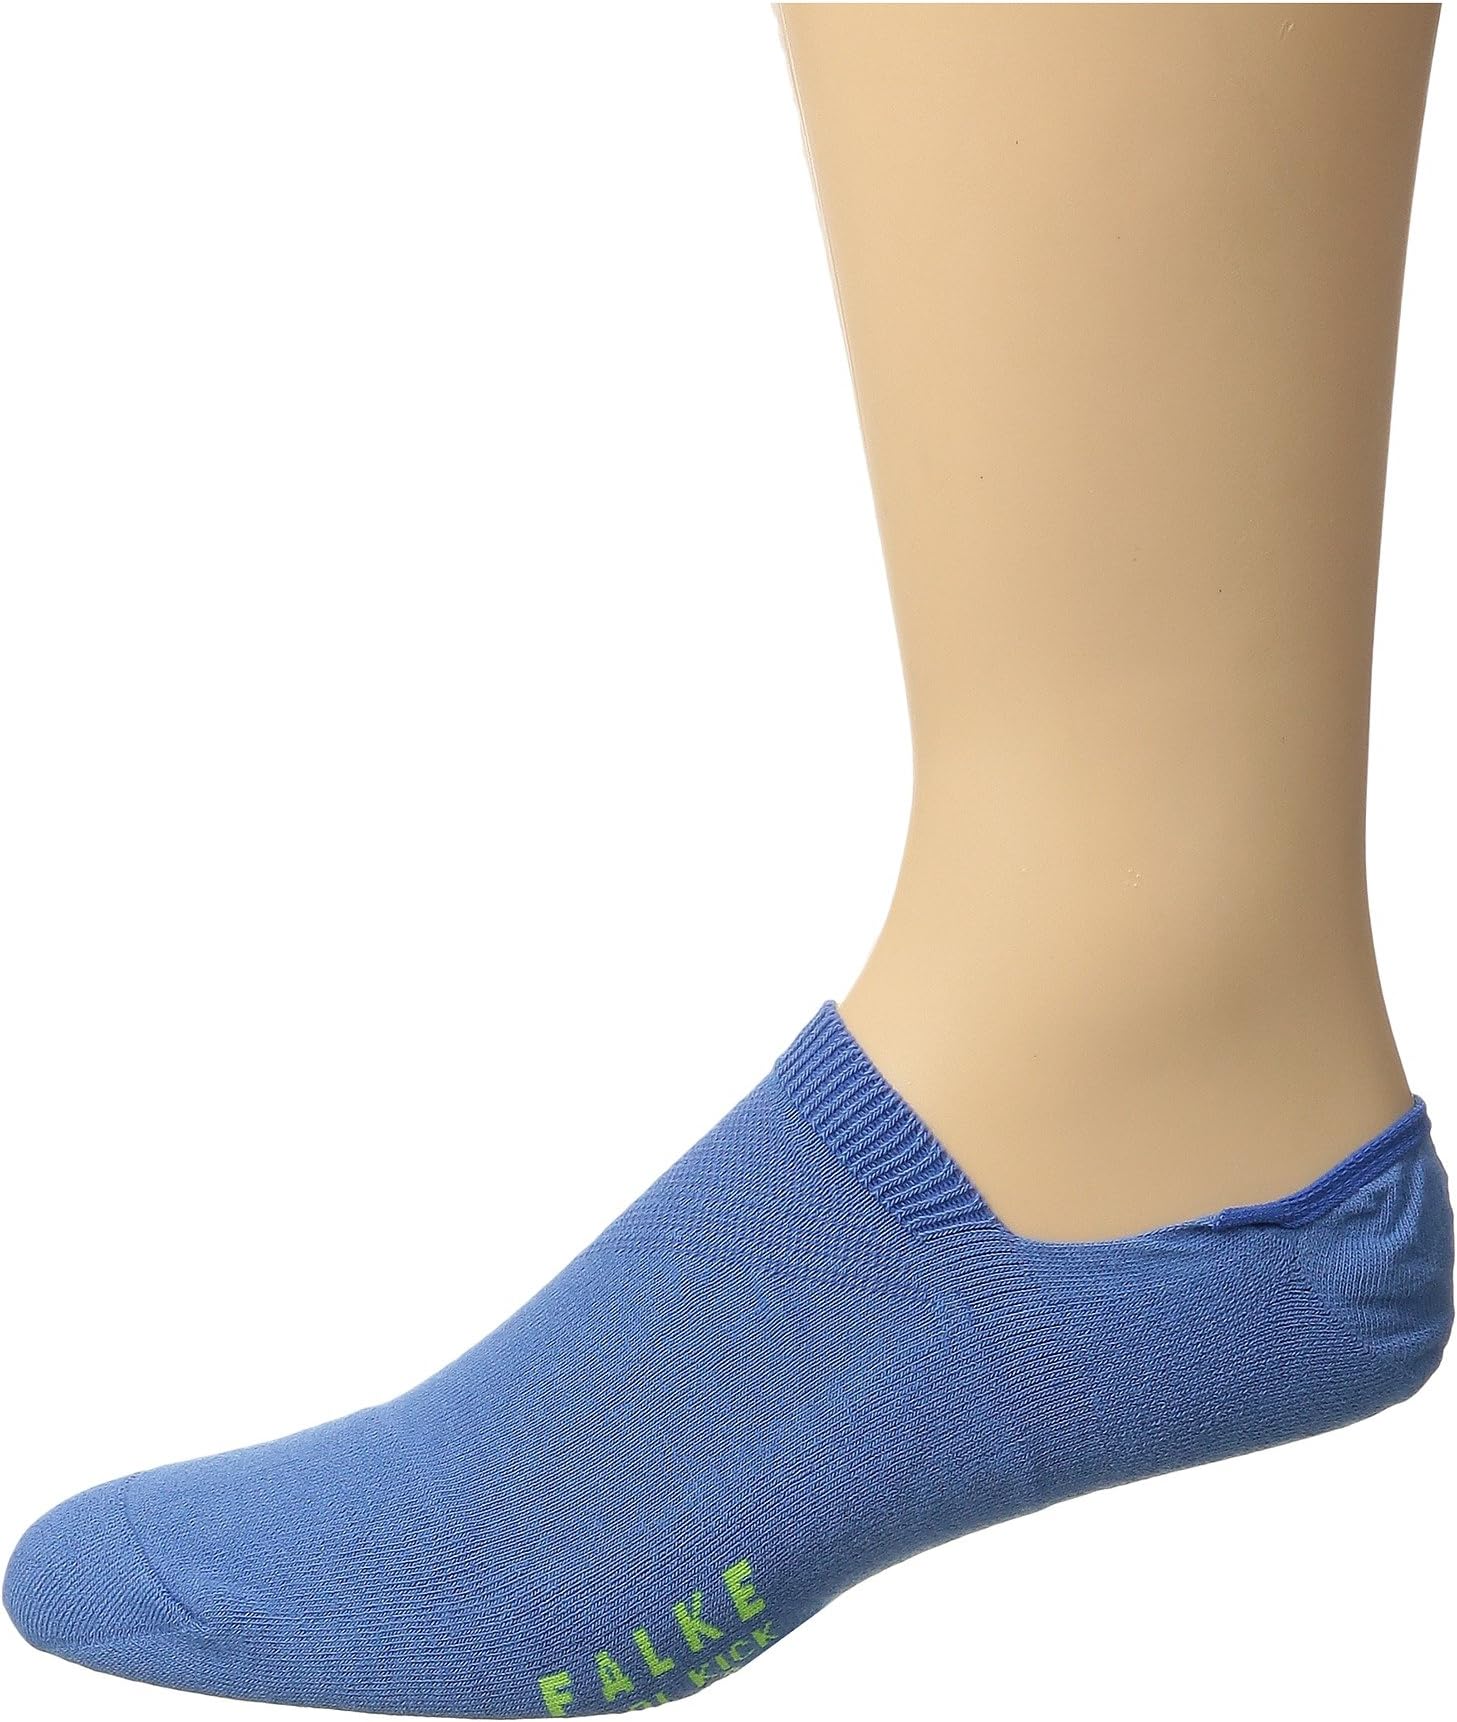 Носки-невидимки Cool Kick Falke, цвет Ribbon Blue носки кроссовки cool kick falke цвет blue cobalt 6712